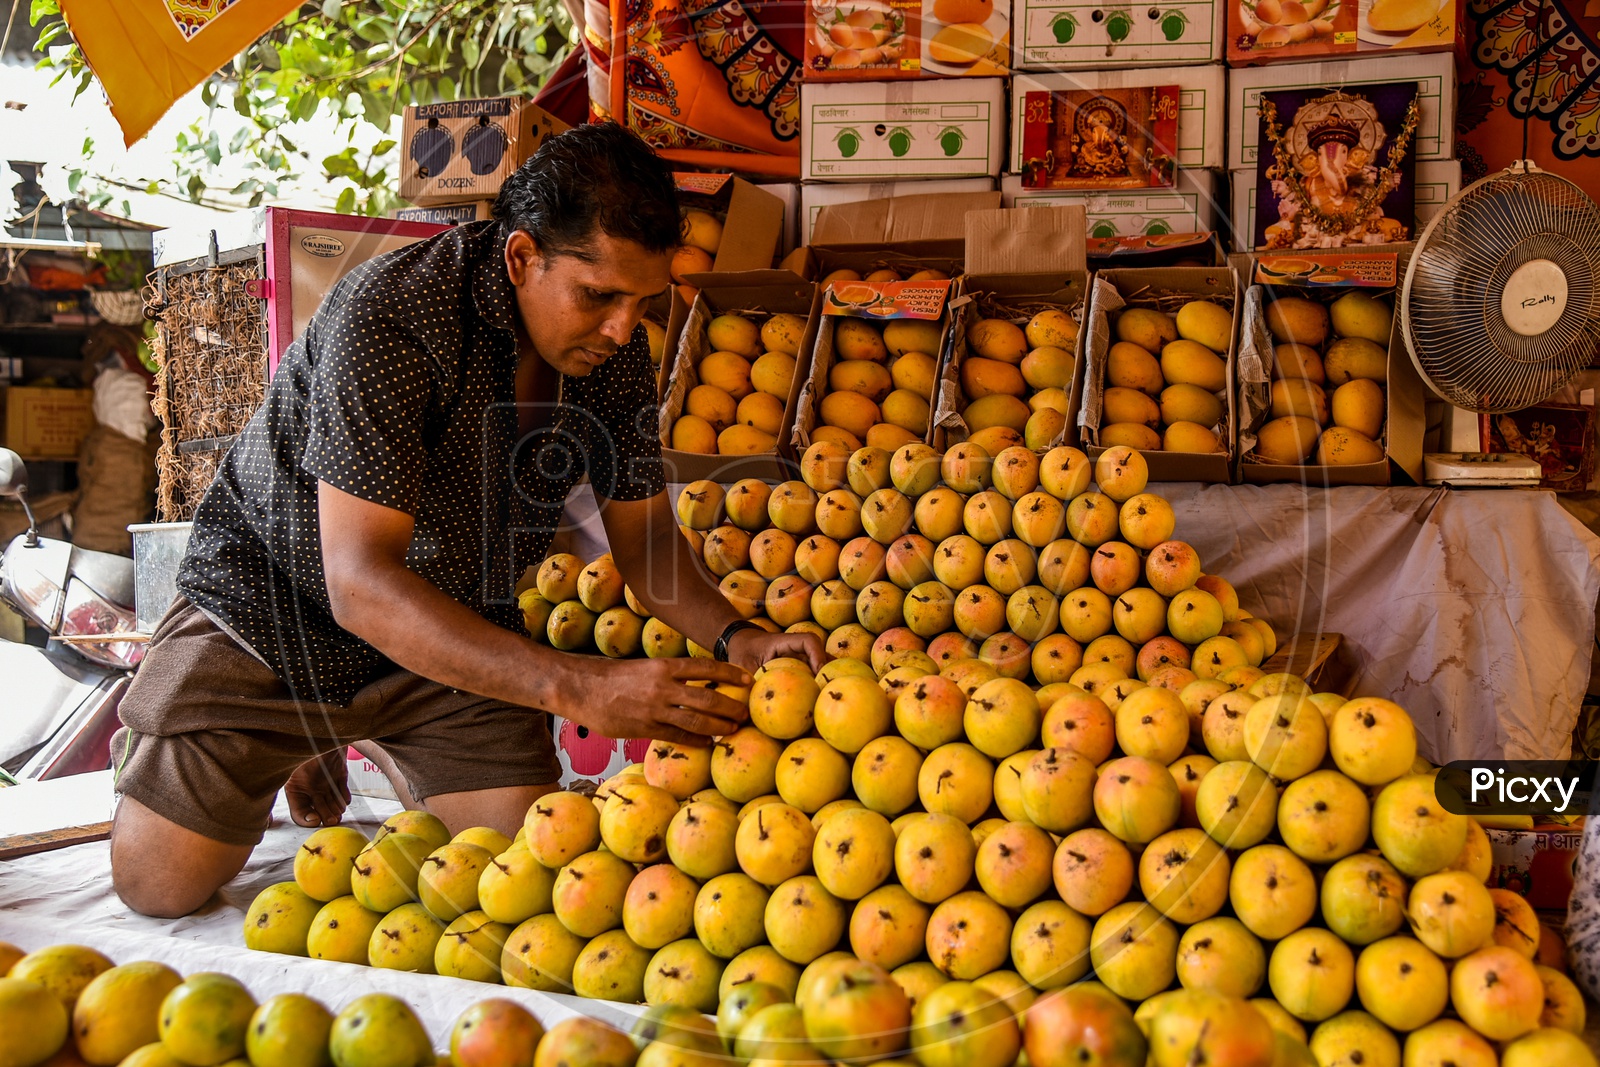 Vendor putting up Ratnagiri Mangoes for display & sale.